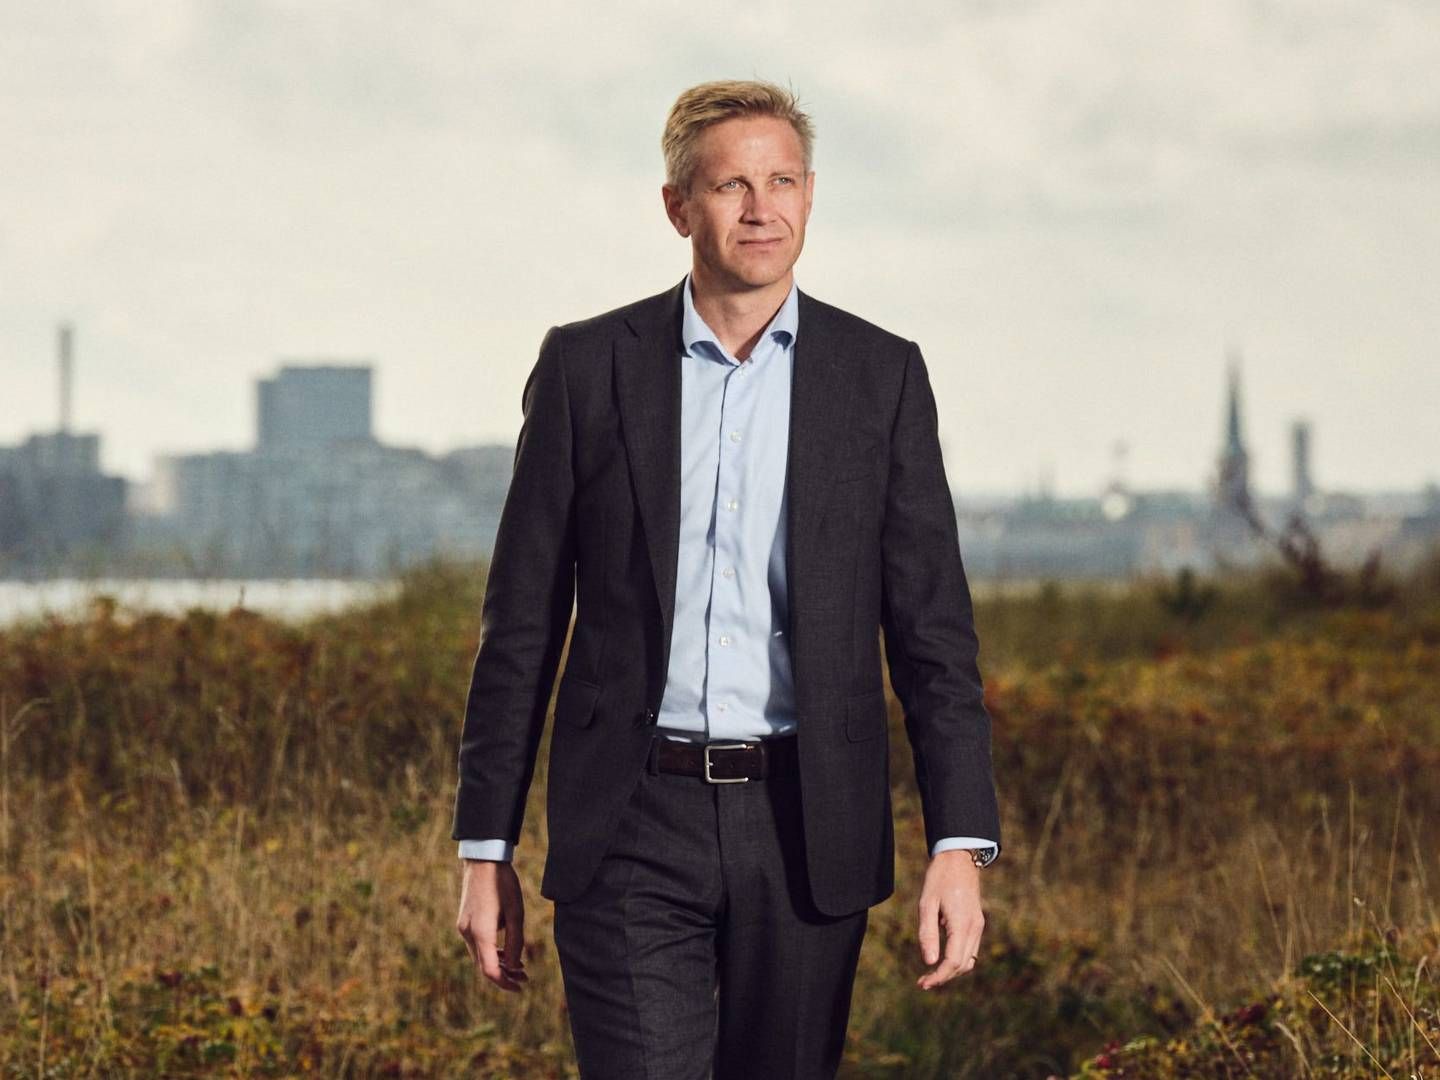 Deloitte-topchef Christian Jensby afviser over for Finans, at det er uenigheder , der er forklaringen på, at partner nu er stoppet. | Foto: Deloitte / Pr